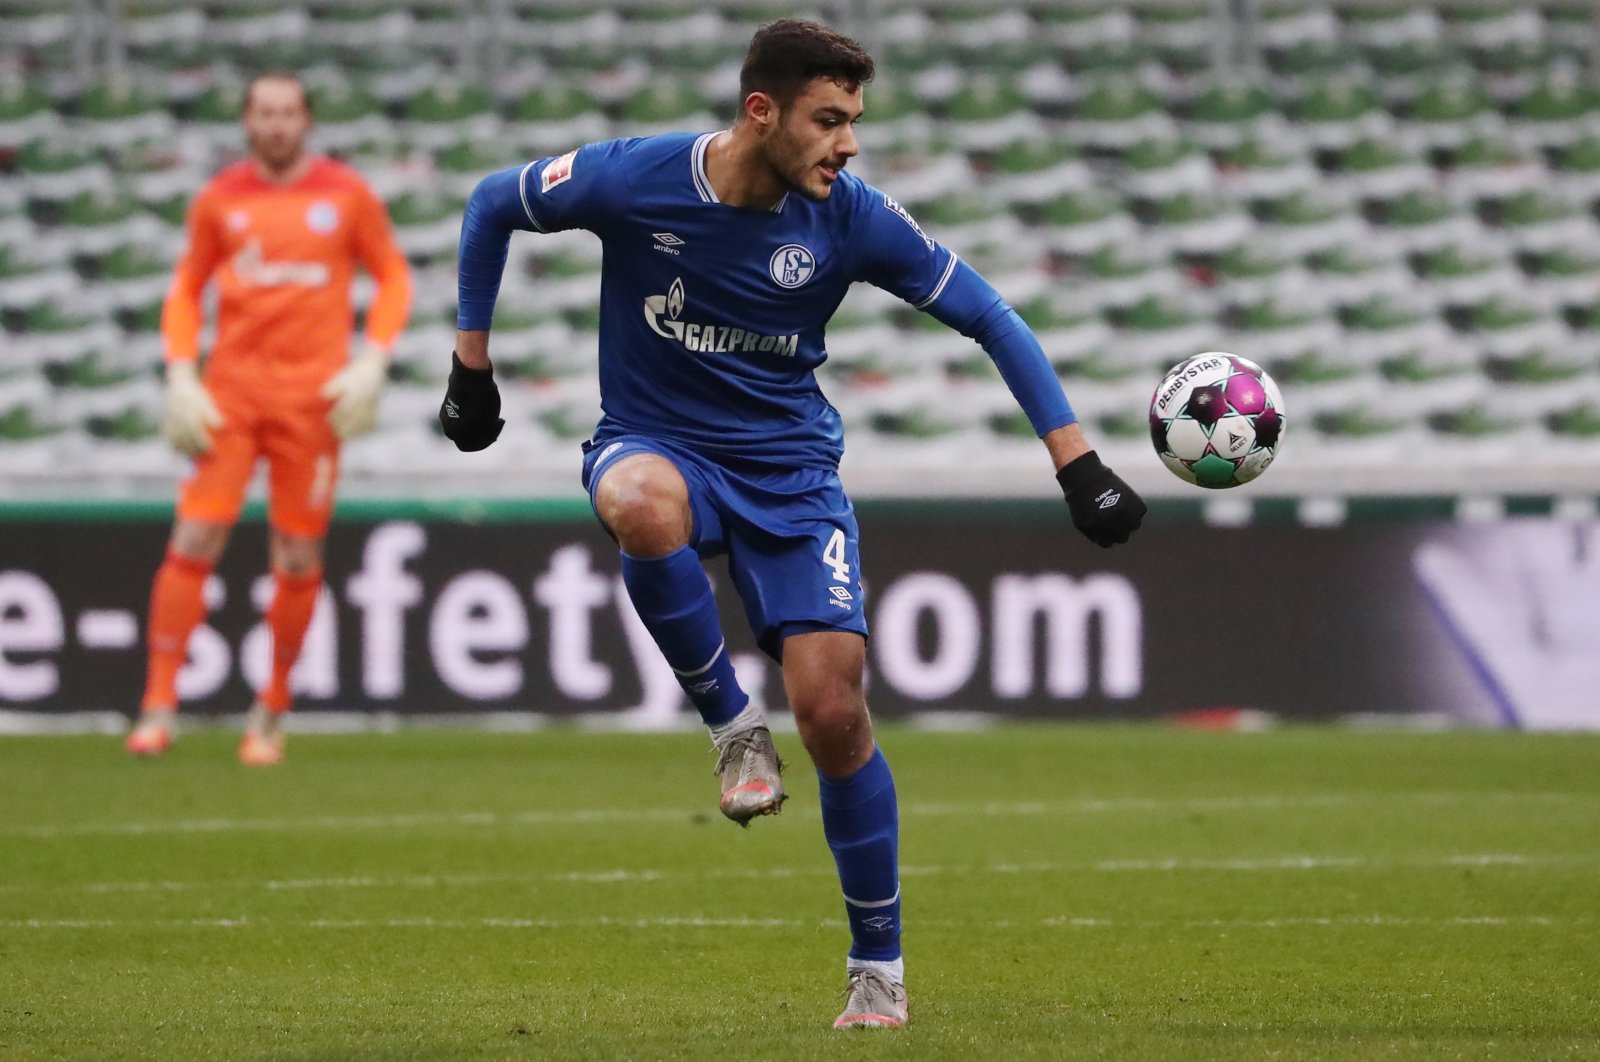 Schalke 04's Turkish defender Ozan Kabak in action against Werder Bremen at the Weser Stadium in Bremen, Germany, Jan. 30, 2021. (EPA Photo)